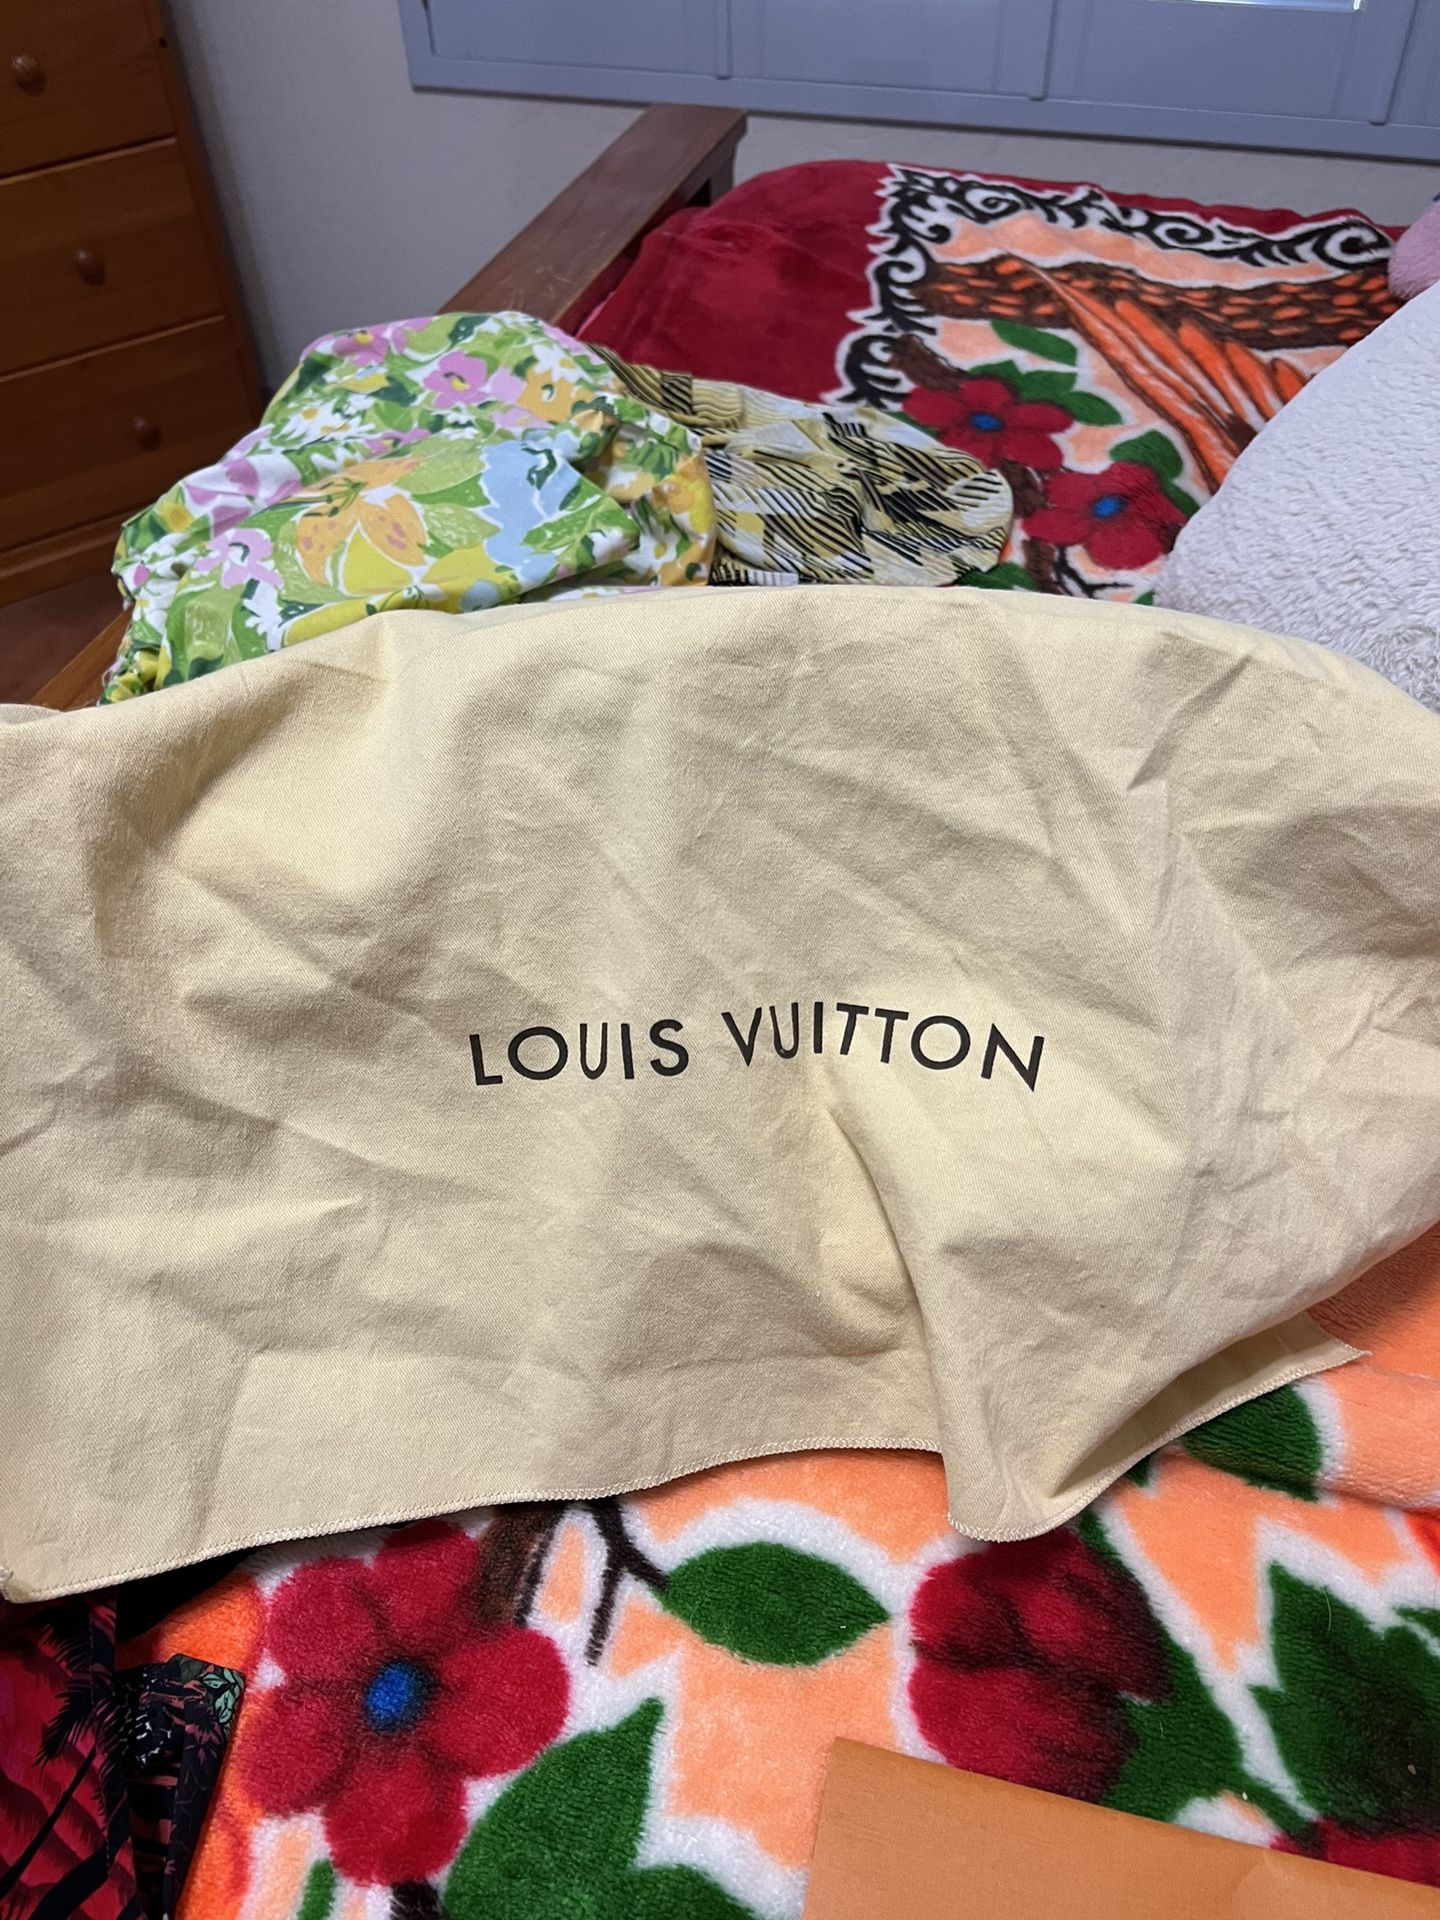 Authentic Louis Vuitton Kensington Bowling Bag for Sale in Mesa, AZ -  OfferUp